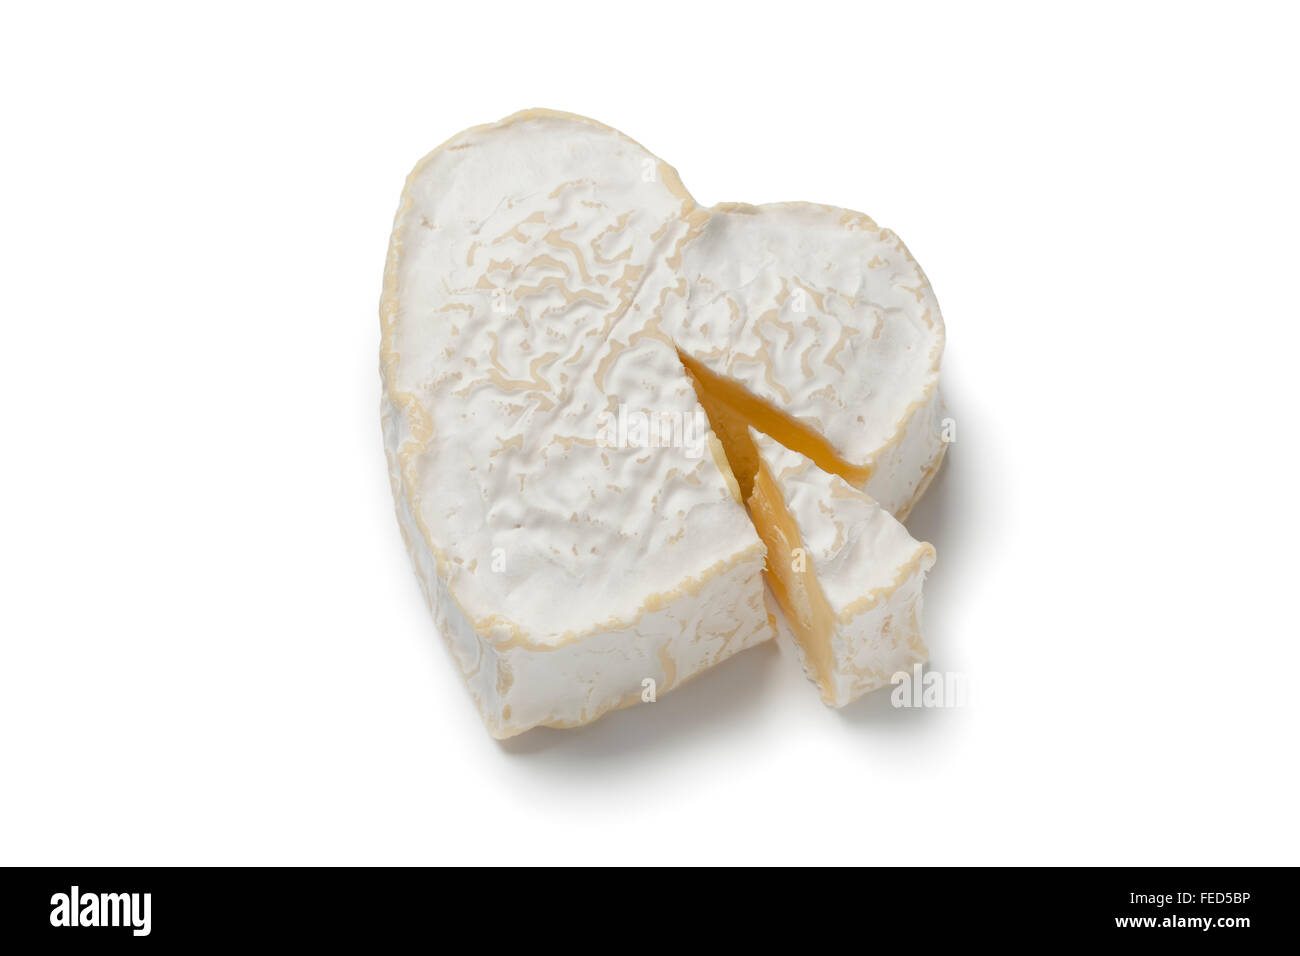 A forma di cuore ad Neufchatel formaggio su sfondo bianco Foto Stock